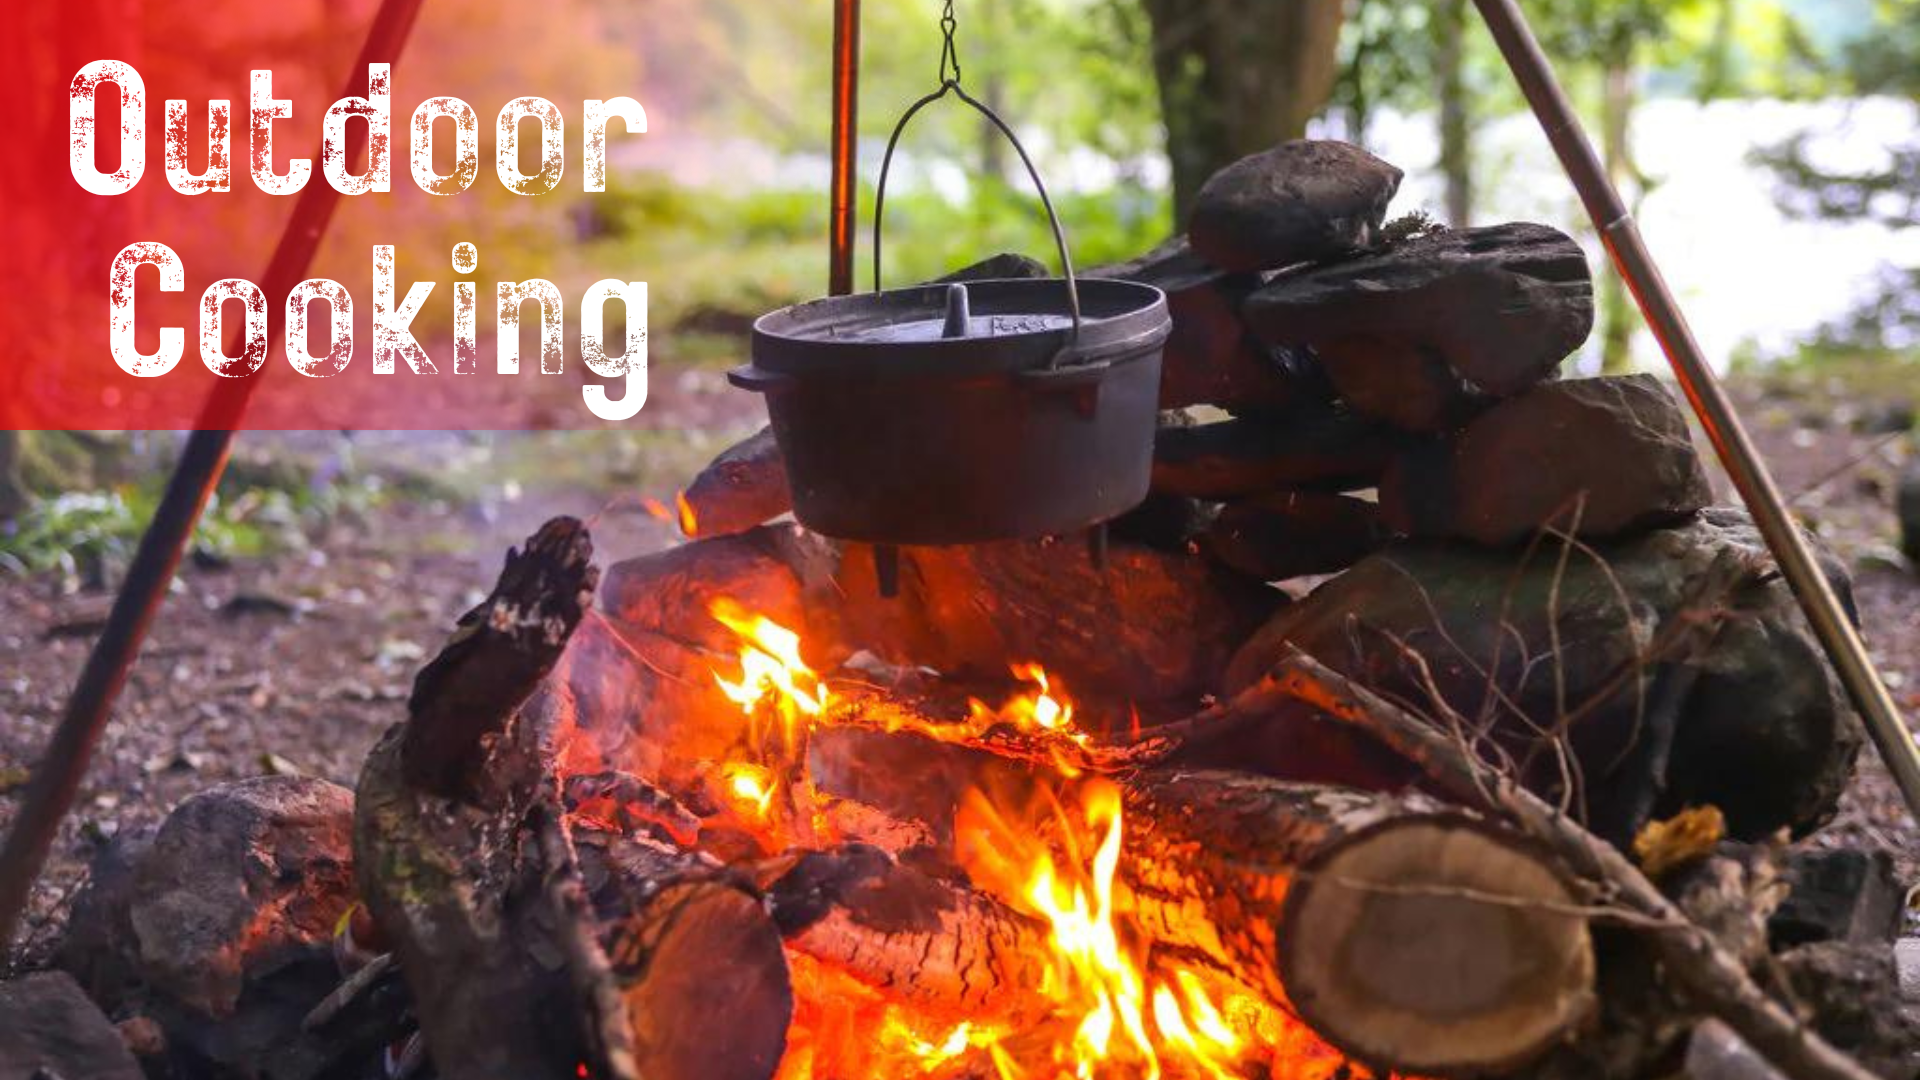 Outdoor Cooking- outdoor kitchen